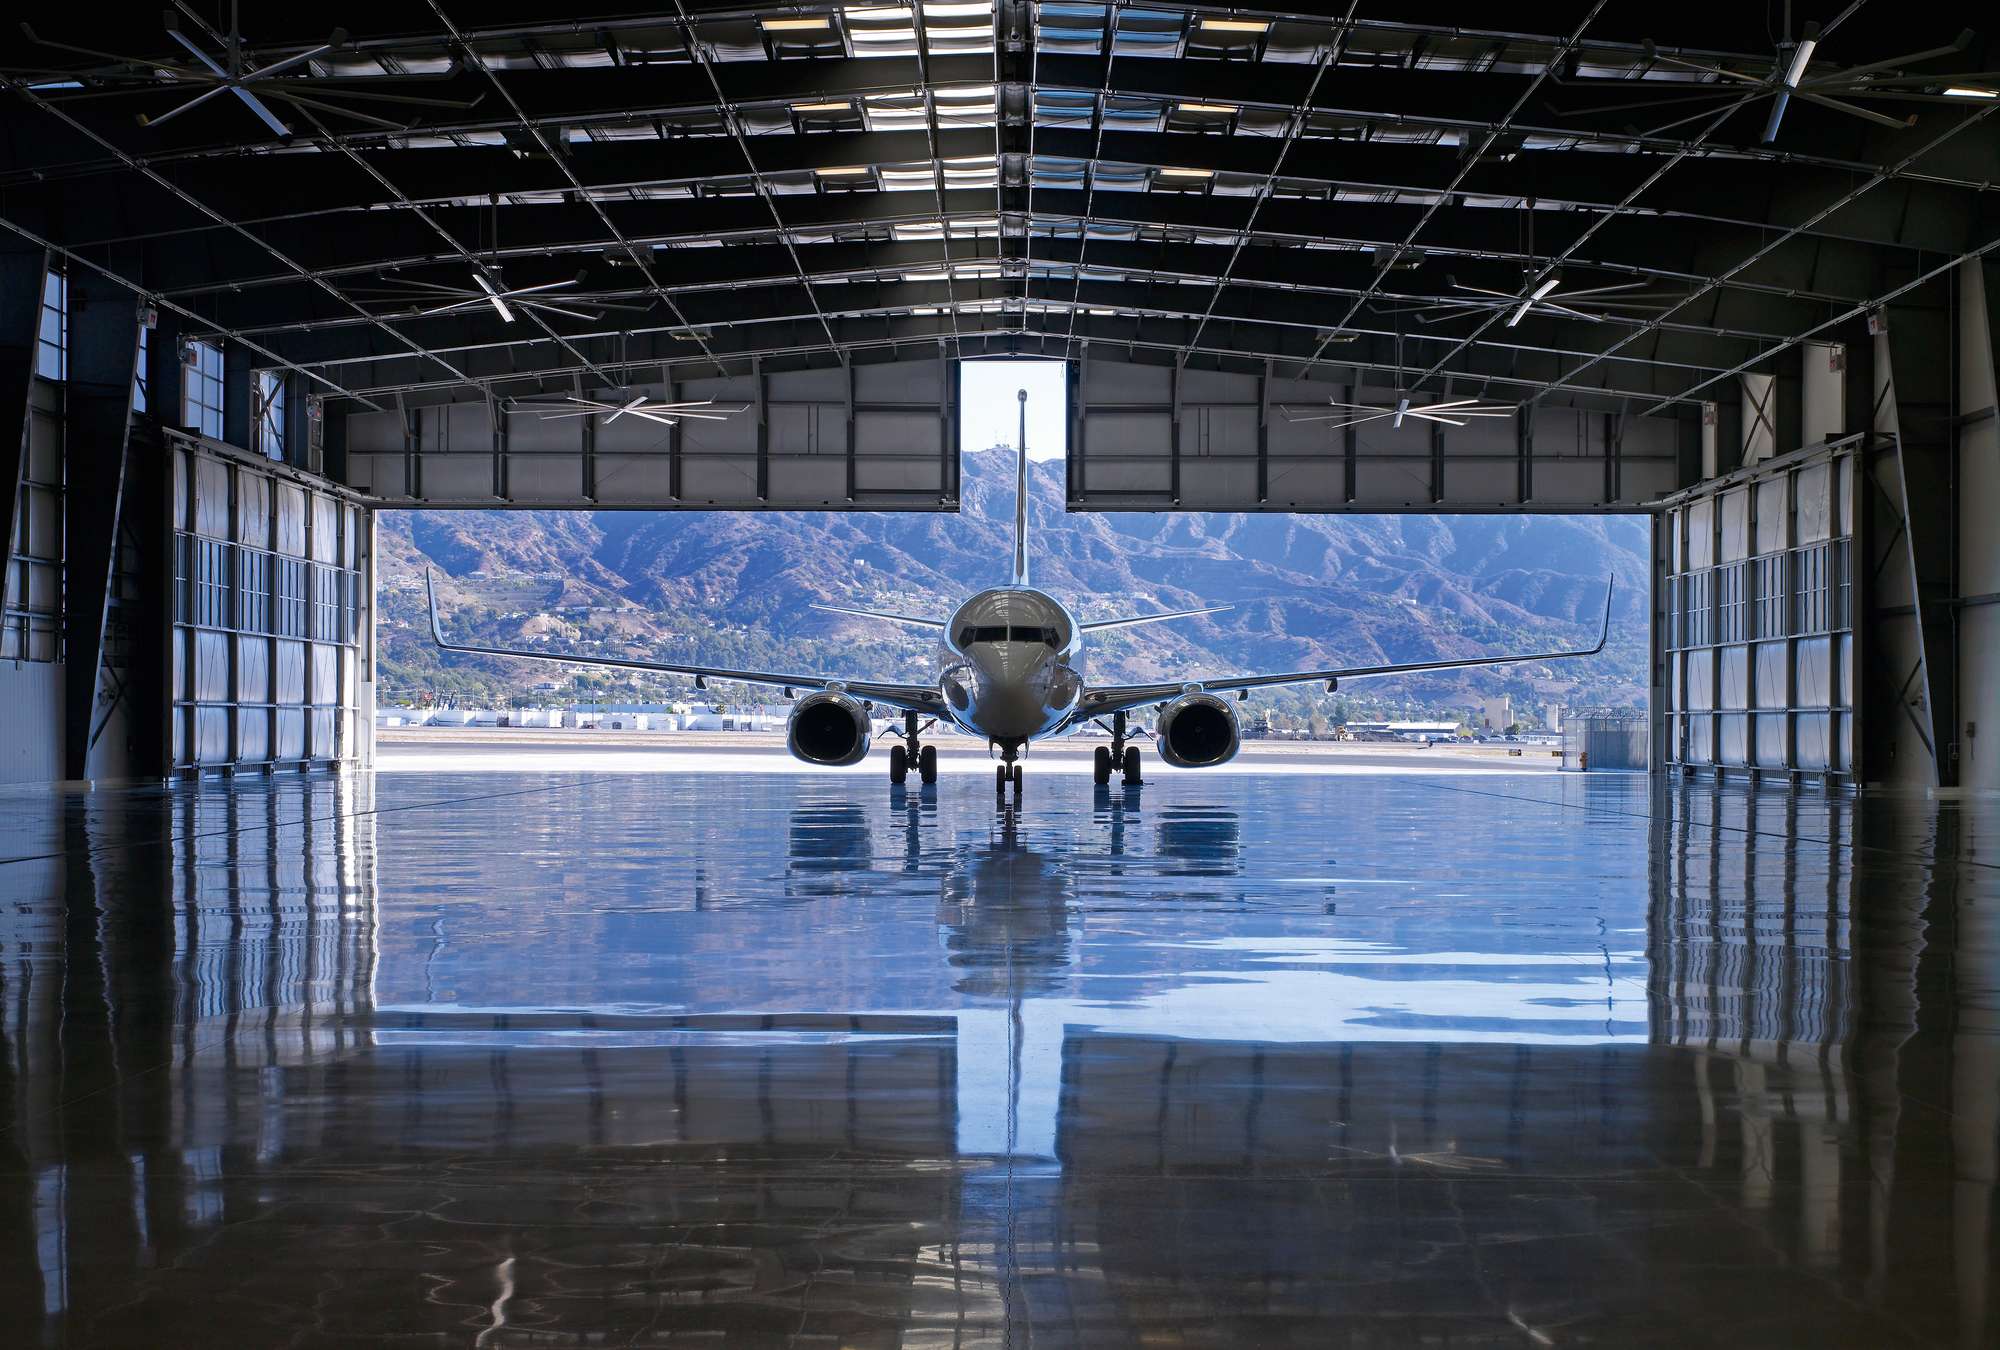             Hangar de aviones - papel pintado fotográfico hangar de aviones en 3D
        